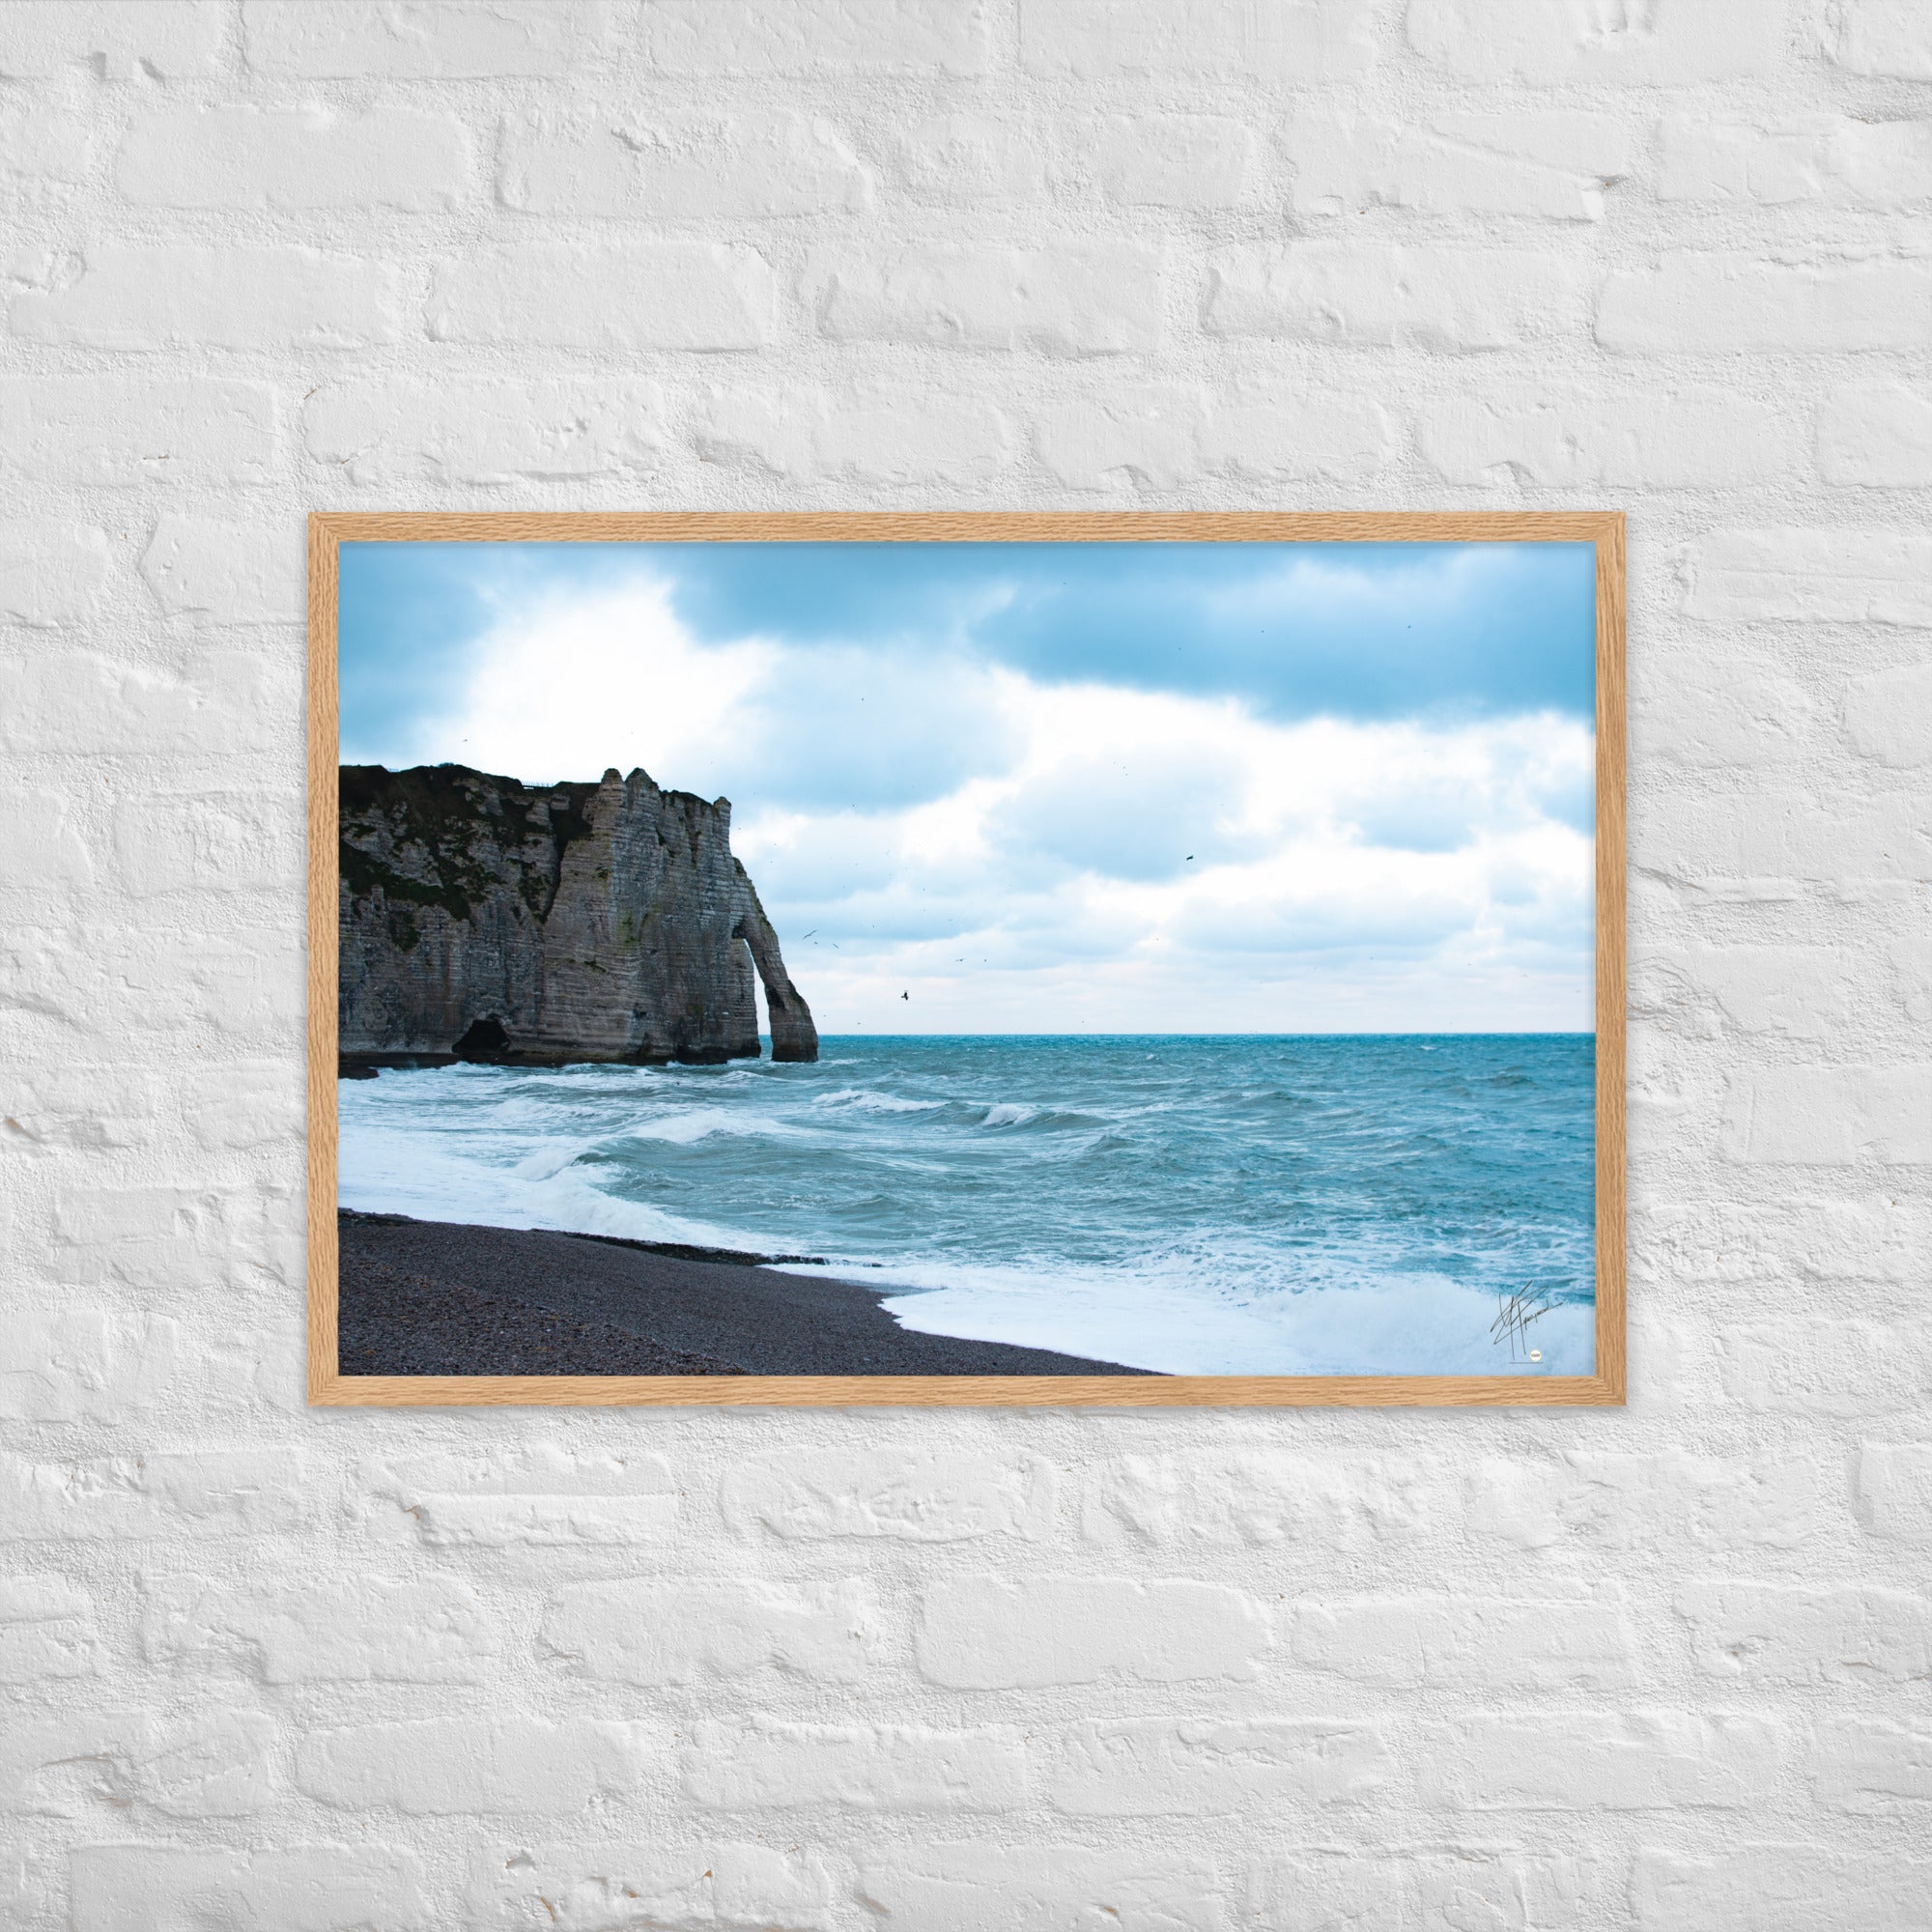 Photographie apaisante de la plage d'Etretat, où la mer caresse le rivage sous un ciel clair. Une représentation parfaite de la tranquillité et de la beauté naturelle de la côte normande.